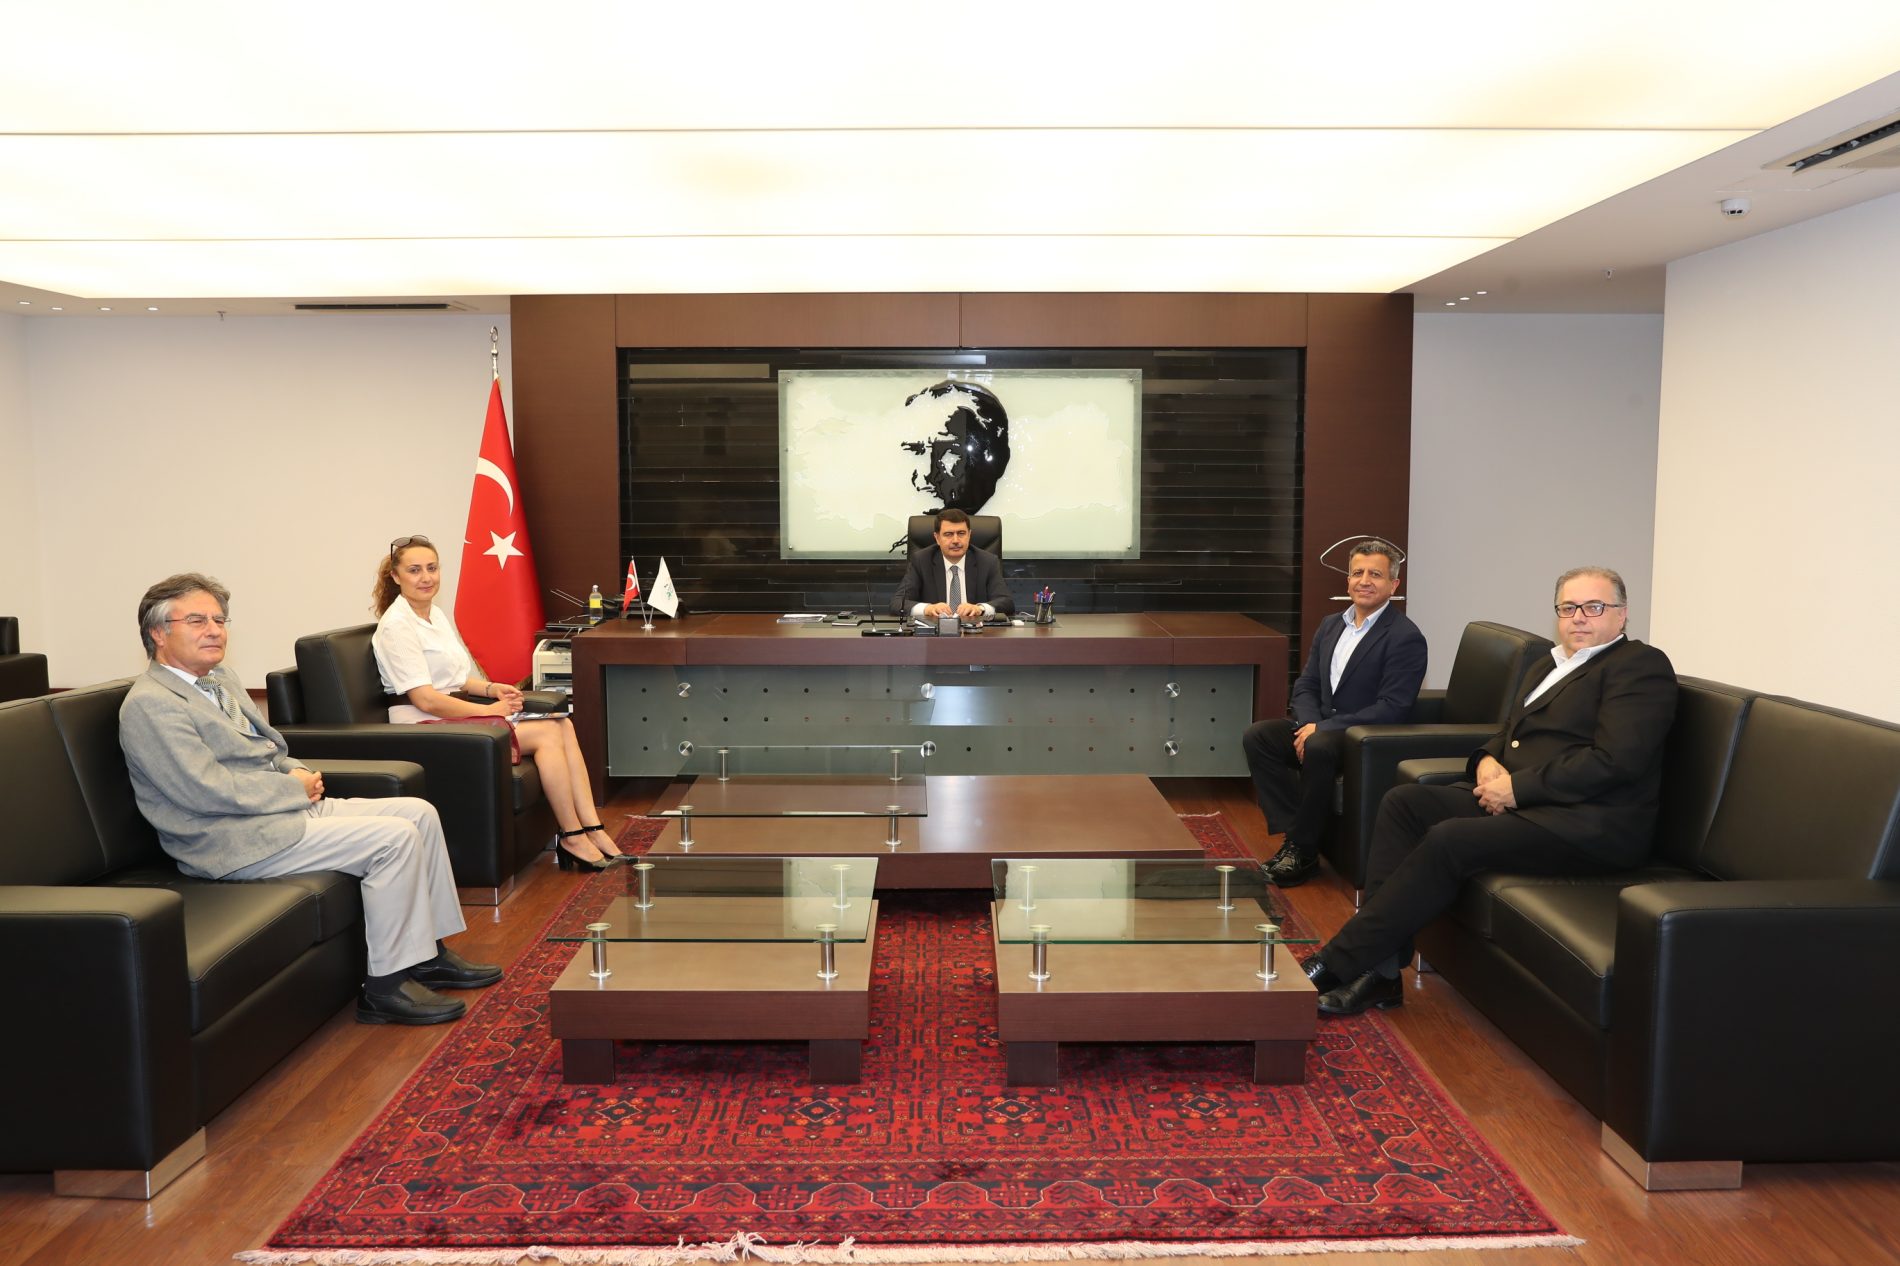 Türkiye Bilişim Derneği İstanbul Şubesi Yönetim Kurulu Üyeleri, İstanbul Valisi Sayın Vasip Şahin’i makamında ziyaret etti.